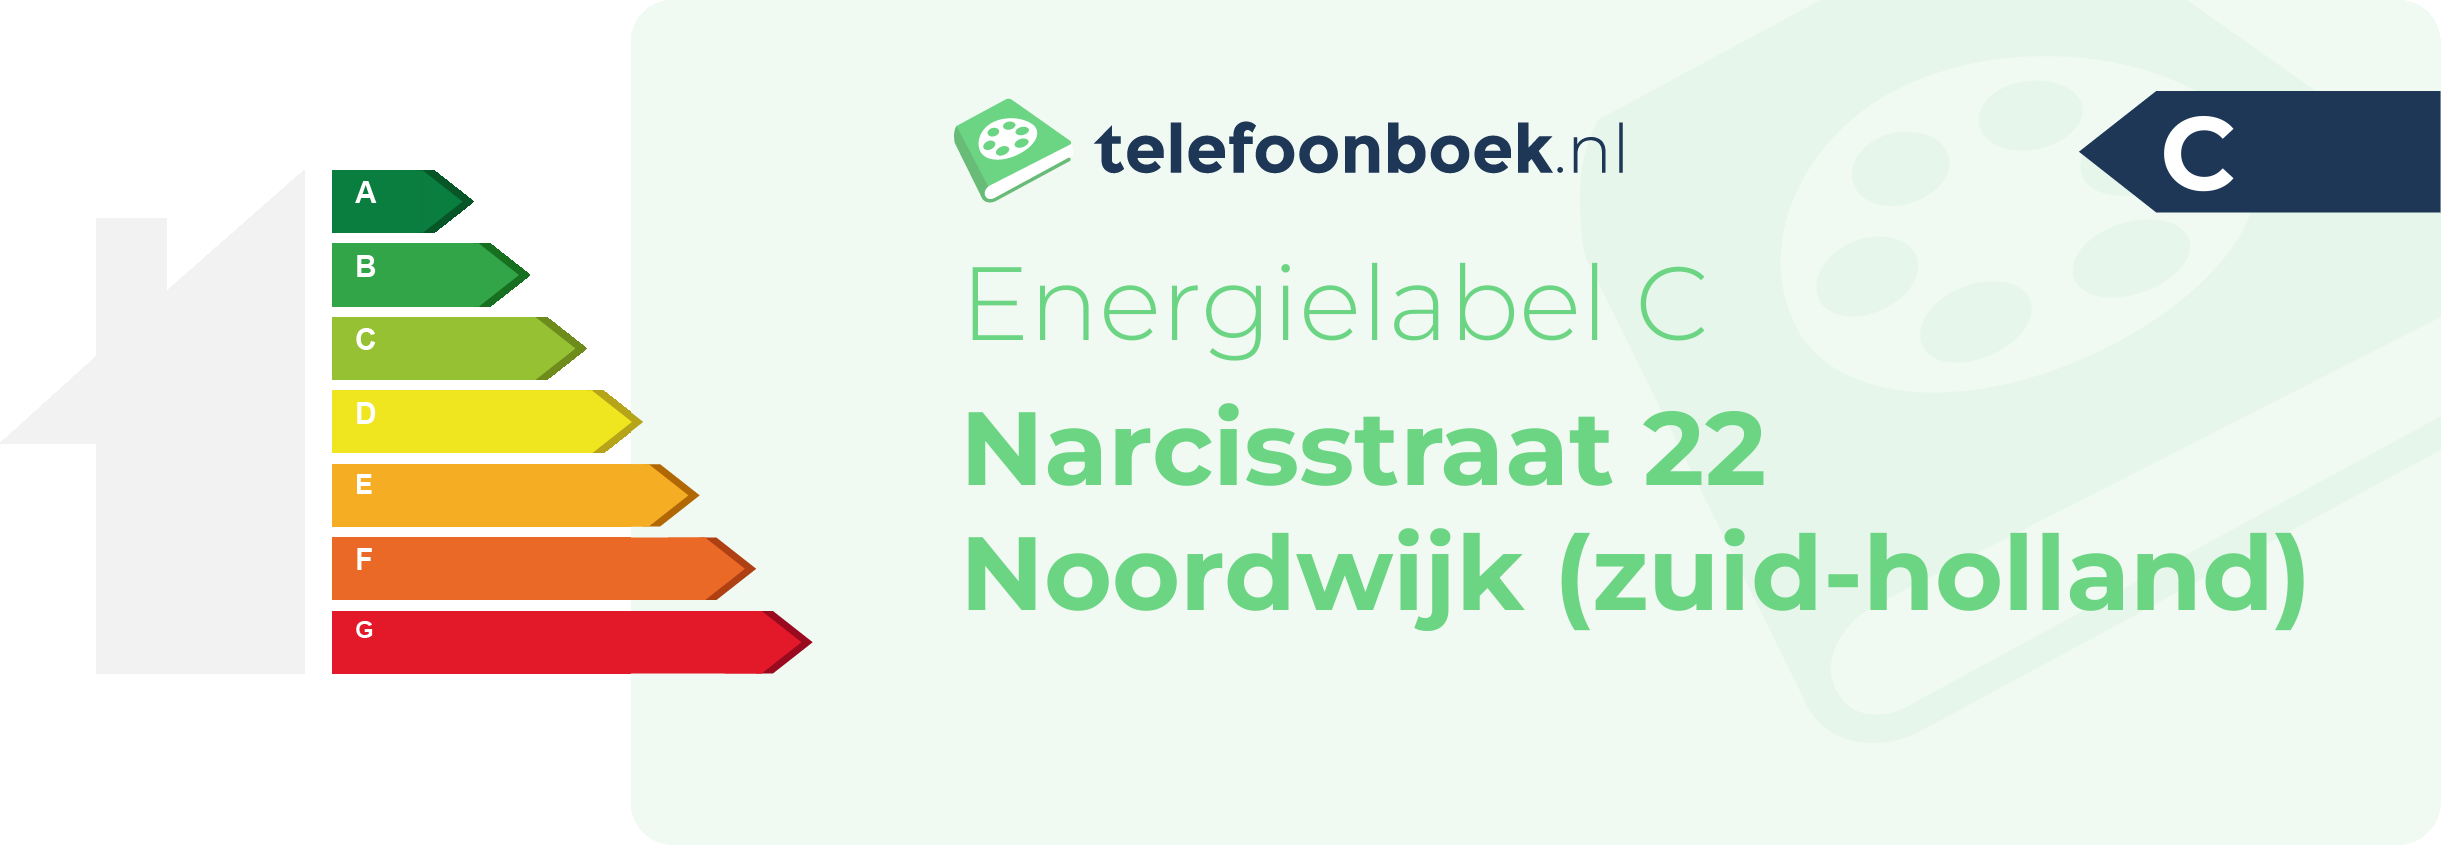 Energielabel Narcisstraat 22 Noordwijk (Zuid-Holland)